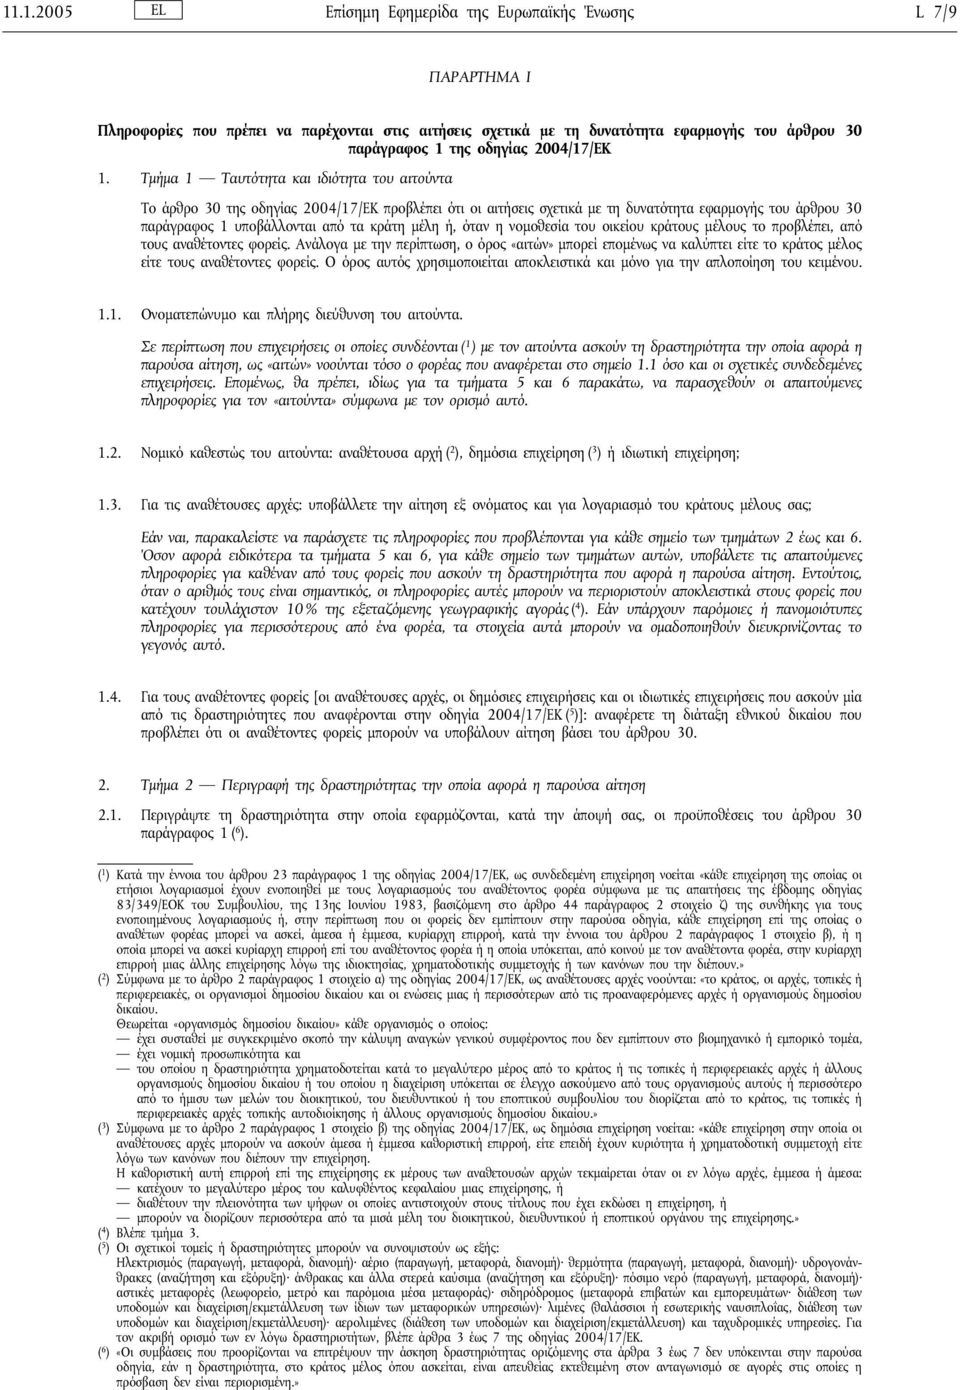 Τμήμα 1 Ταυτότητα και ιδιότητα του αιτούντα Το άρθρο 30 της οδηγίας 2004/17/ΕΚ προβλέπει ότι οι αιτήσεις σχετικά με τη δυνατότητα εφαρμογής του άρθρου 30 παράγραφος 1 υποβάλλονται από τα κράτη μέλη